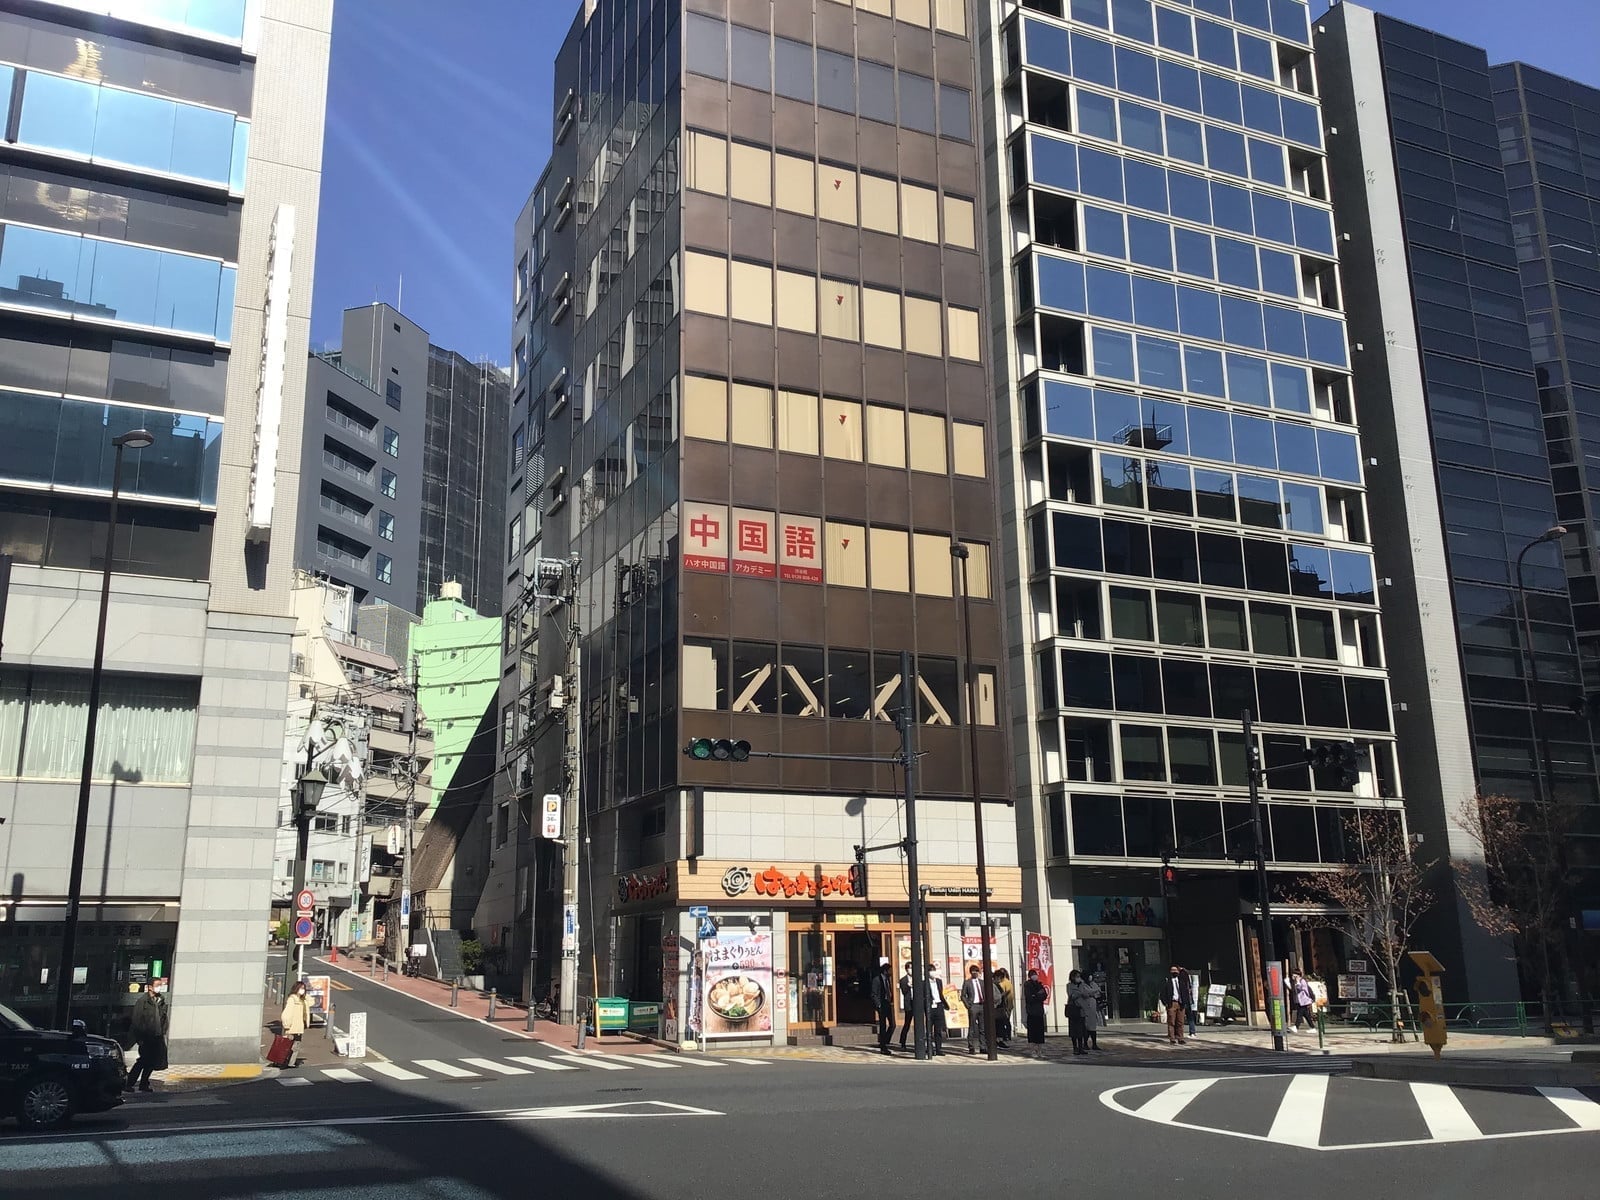 渋谷駅「C1」もしくは新南口から徒歩3分です。渋谷スクランブルスクエアから地下道を進んでください。 渋谷ストリーム向かい、渋谷警察署から明治通りを恵比寿方面へ約100m進んだところにあります。 目印は「はなまるうどん」のビル！階段かエレベーターで3階へお進みください。